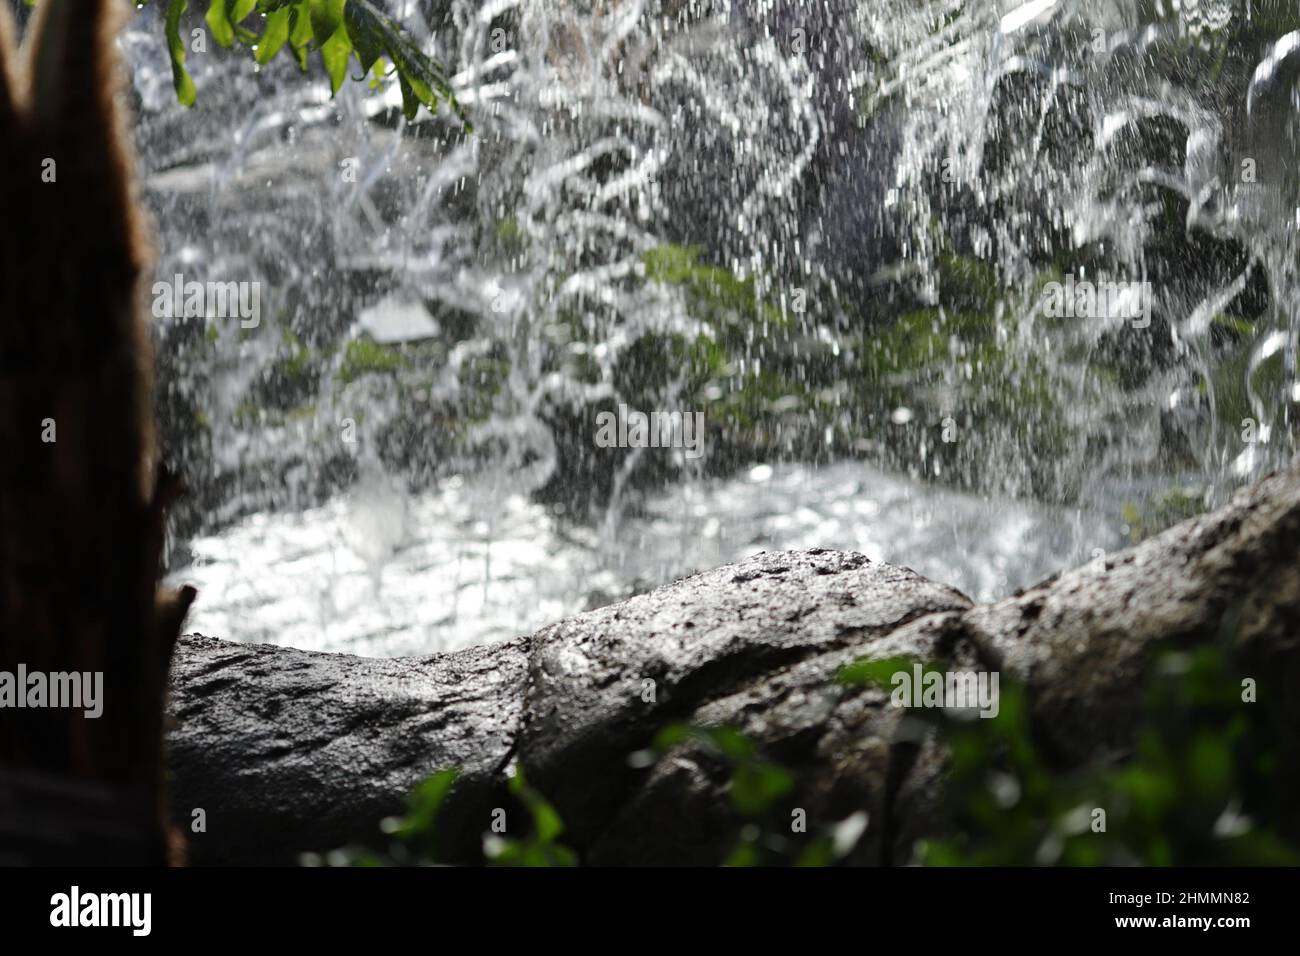 Eau en cascade, roche humide près des chutes et de la végétation Banque D'Images